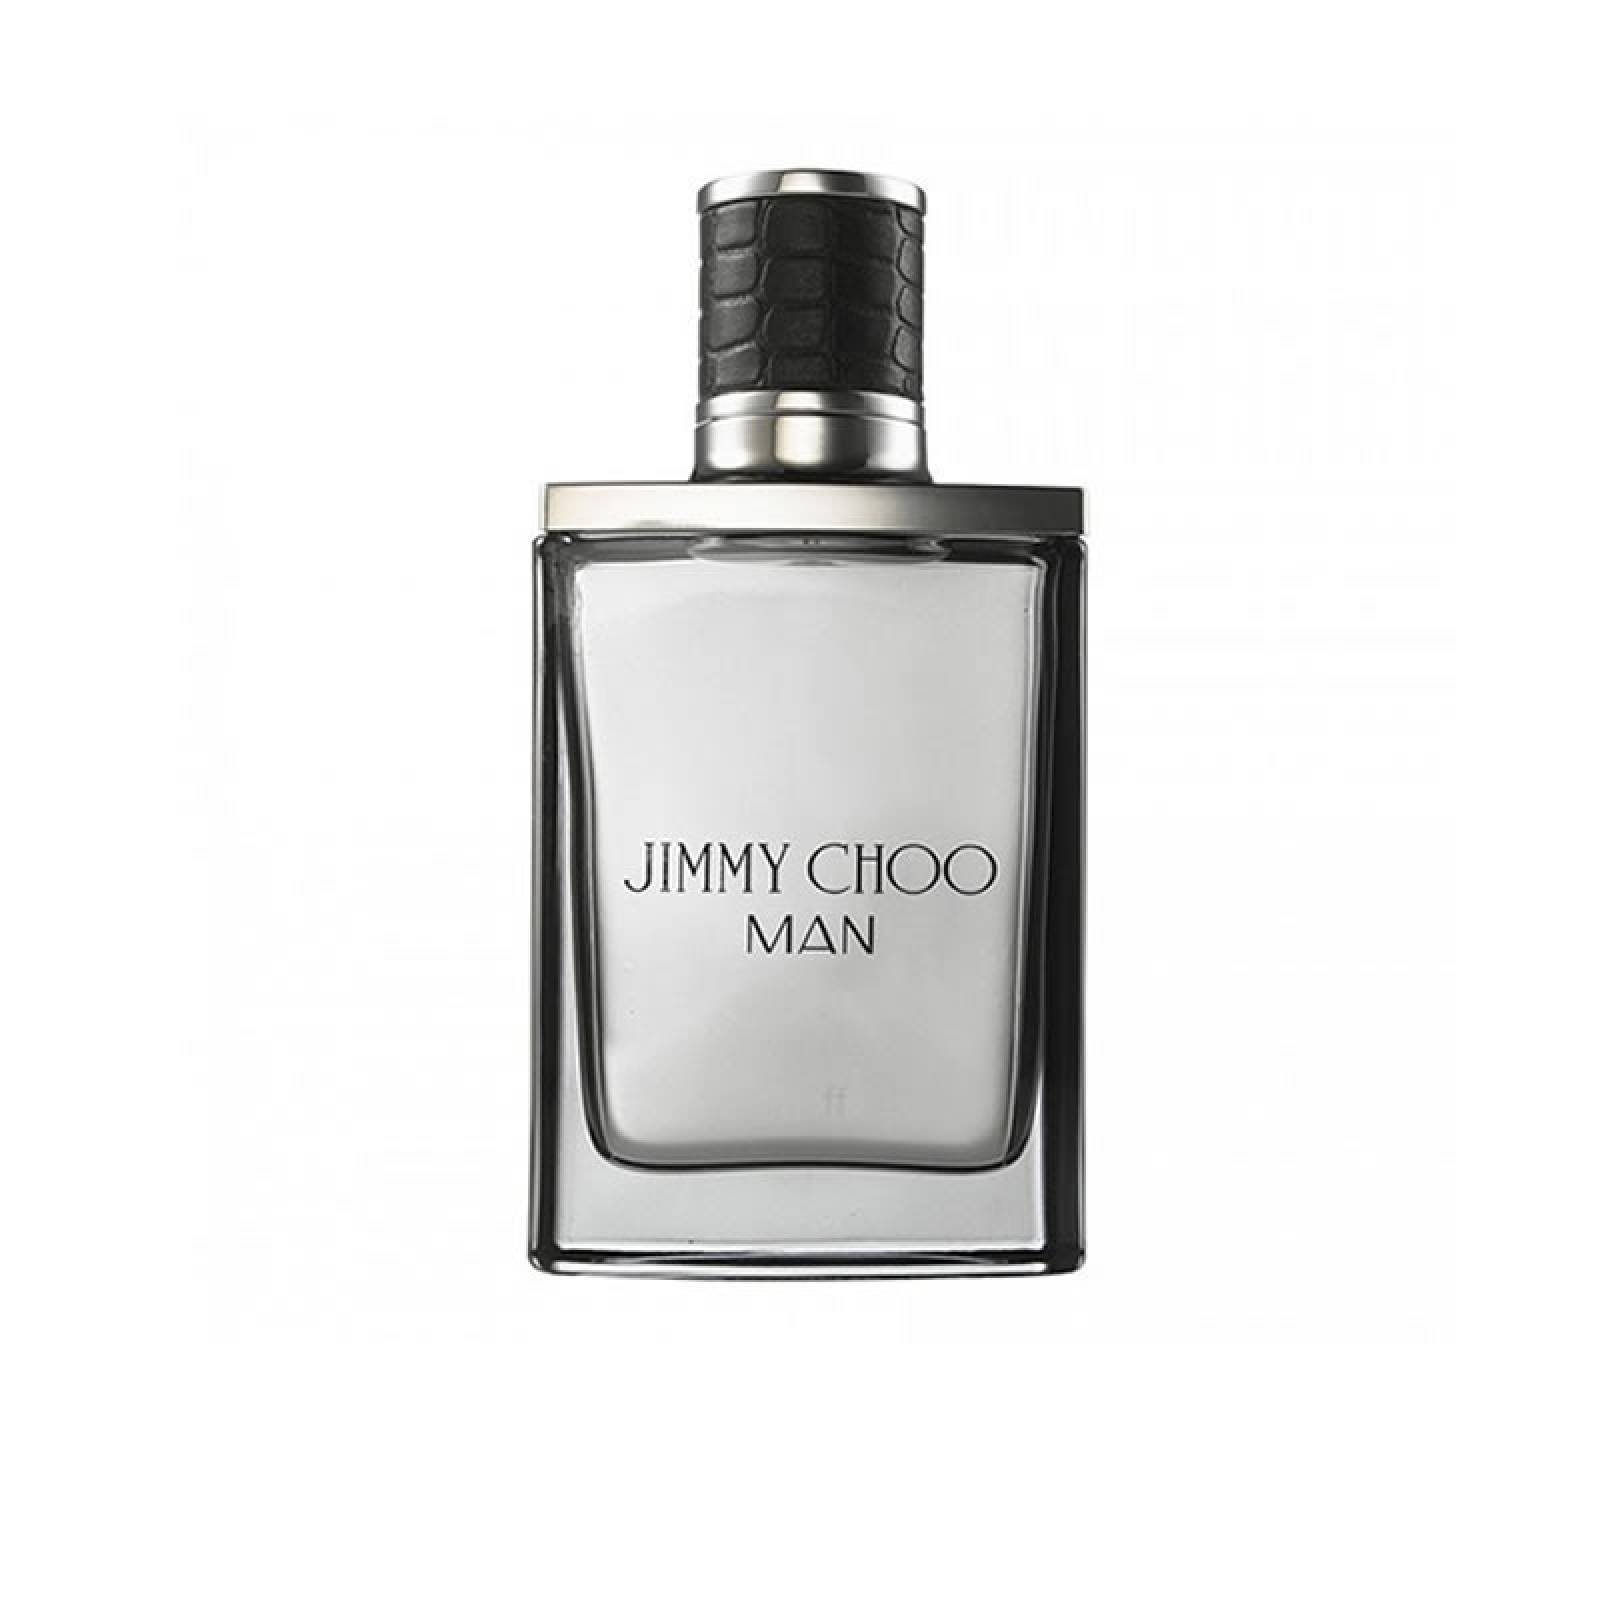 Perfume Caballero Jimmy Choo MAN 100 Ml Eau de Toilette